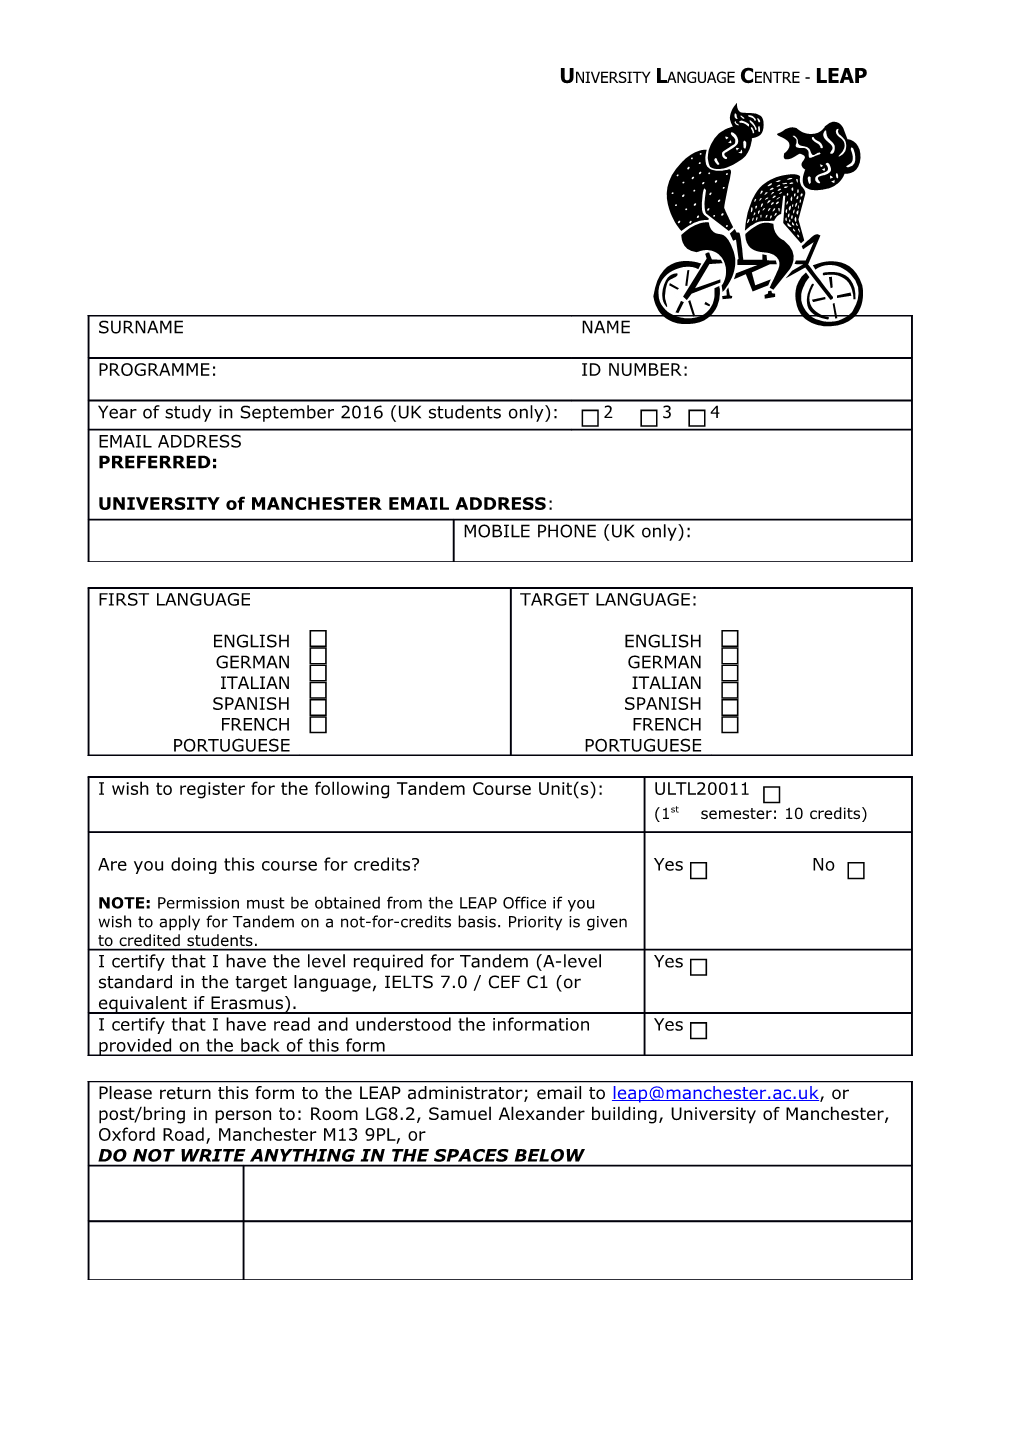 Tandem Course Unit Registration Form